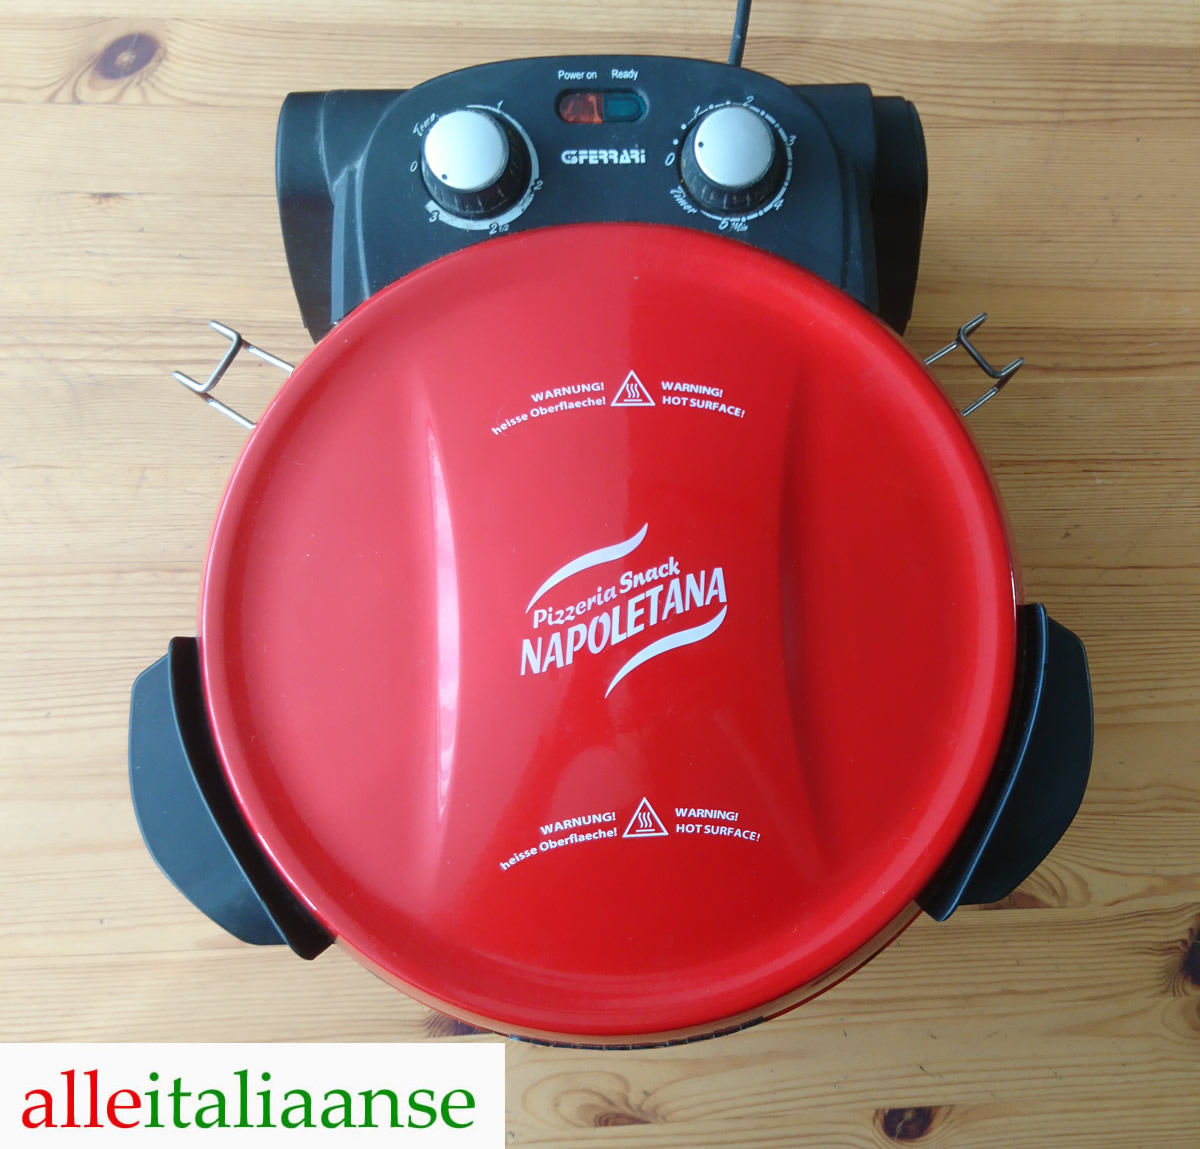 De G3 Ferrari Snack Napoletana elektrische pizzaoven